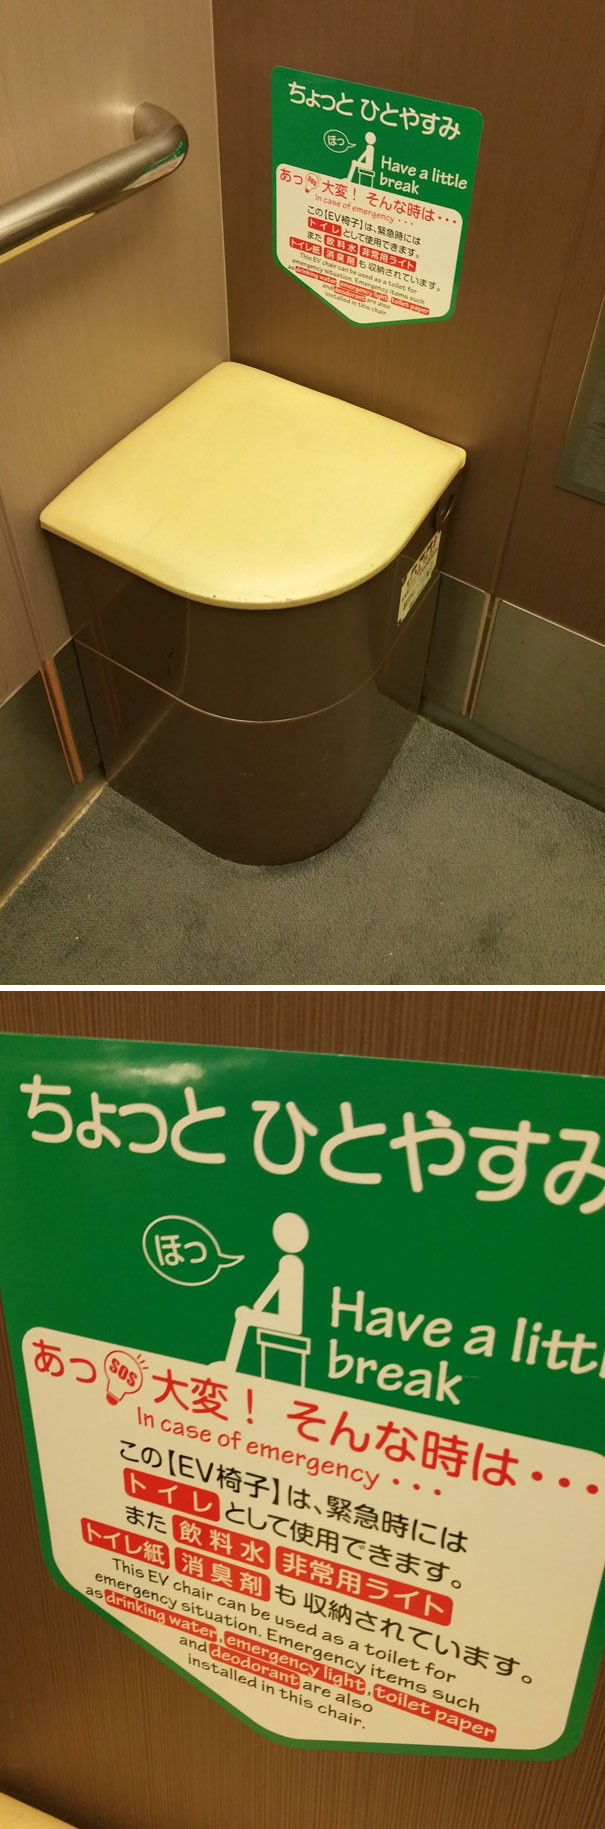 Trong thang máy ở Nhật Bản có một chiếc ghế đặc biệt. Trong trường hợp khẩn cấp (ví dụ khi bạn bị kẹt trong thang máy nhiều giờ), chiếc ghế này có thể được sử dụng như toilet. Ngoài ra bên trong chiếc ghế có những vật dụng cần thiết trong trường hợp khẩn cấp như nước uống, đèn pin, giấy vệ sinh và chất khử mùi